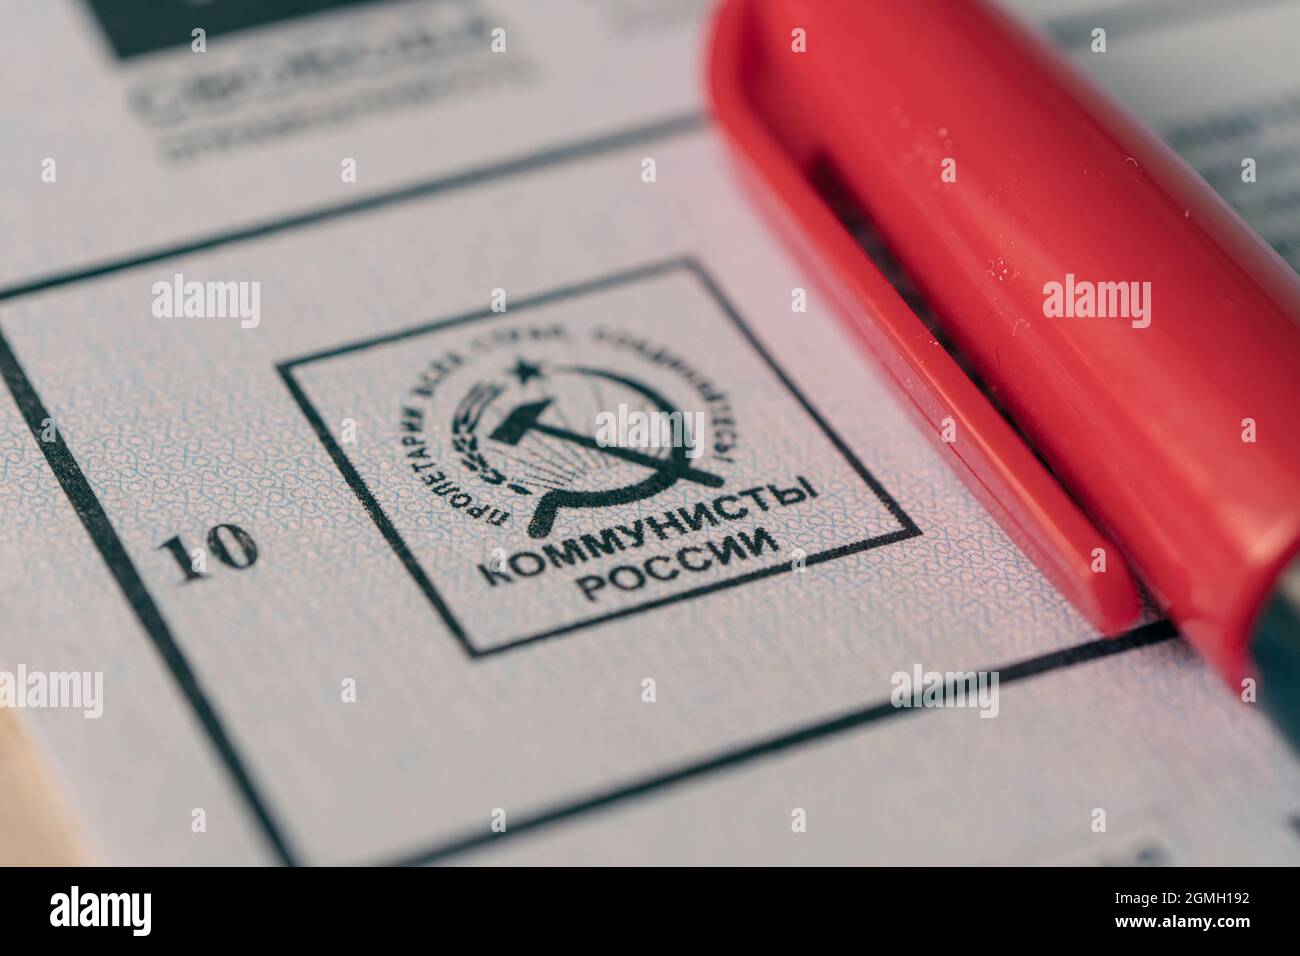 le logo de la russie communiste sur le billutène est un gros plan. Élections à la Douma d'Etat de la Fédération de Russie. (Traduction : communistes russie) 1er septembre Banque D'Images